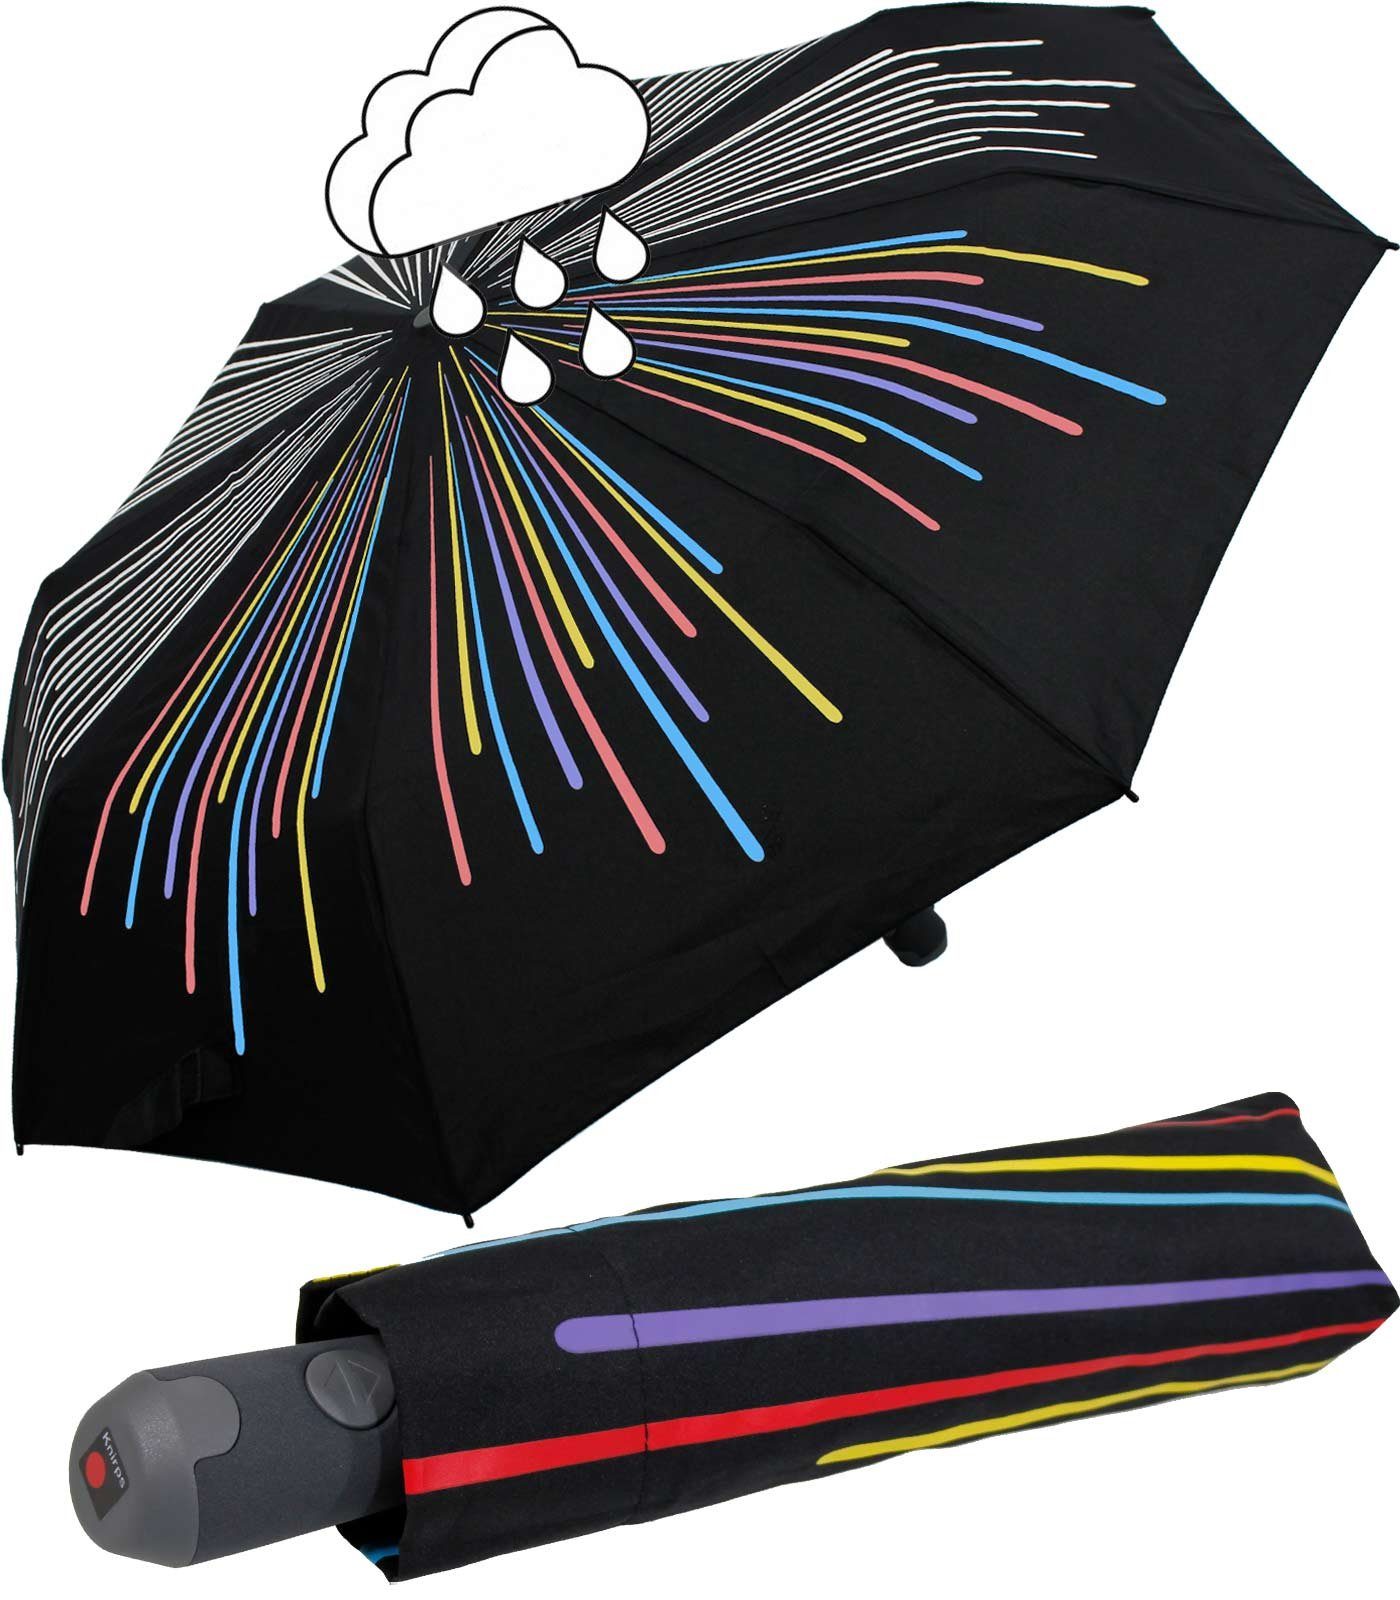 Knirps® Langregenschirm stabiler, leichter Schirm mit Auf-Zu-Automatik, der  Aufdruck ändert seine Farbe, wenn er nass wird